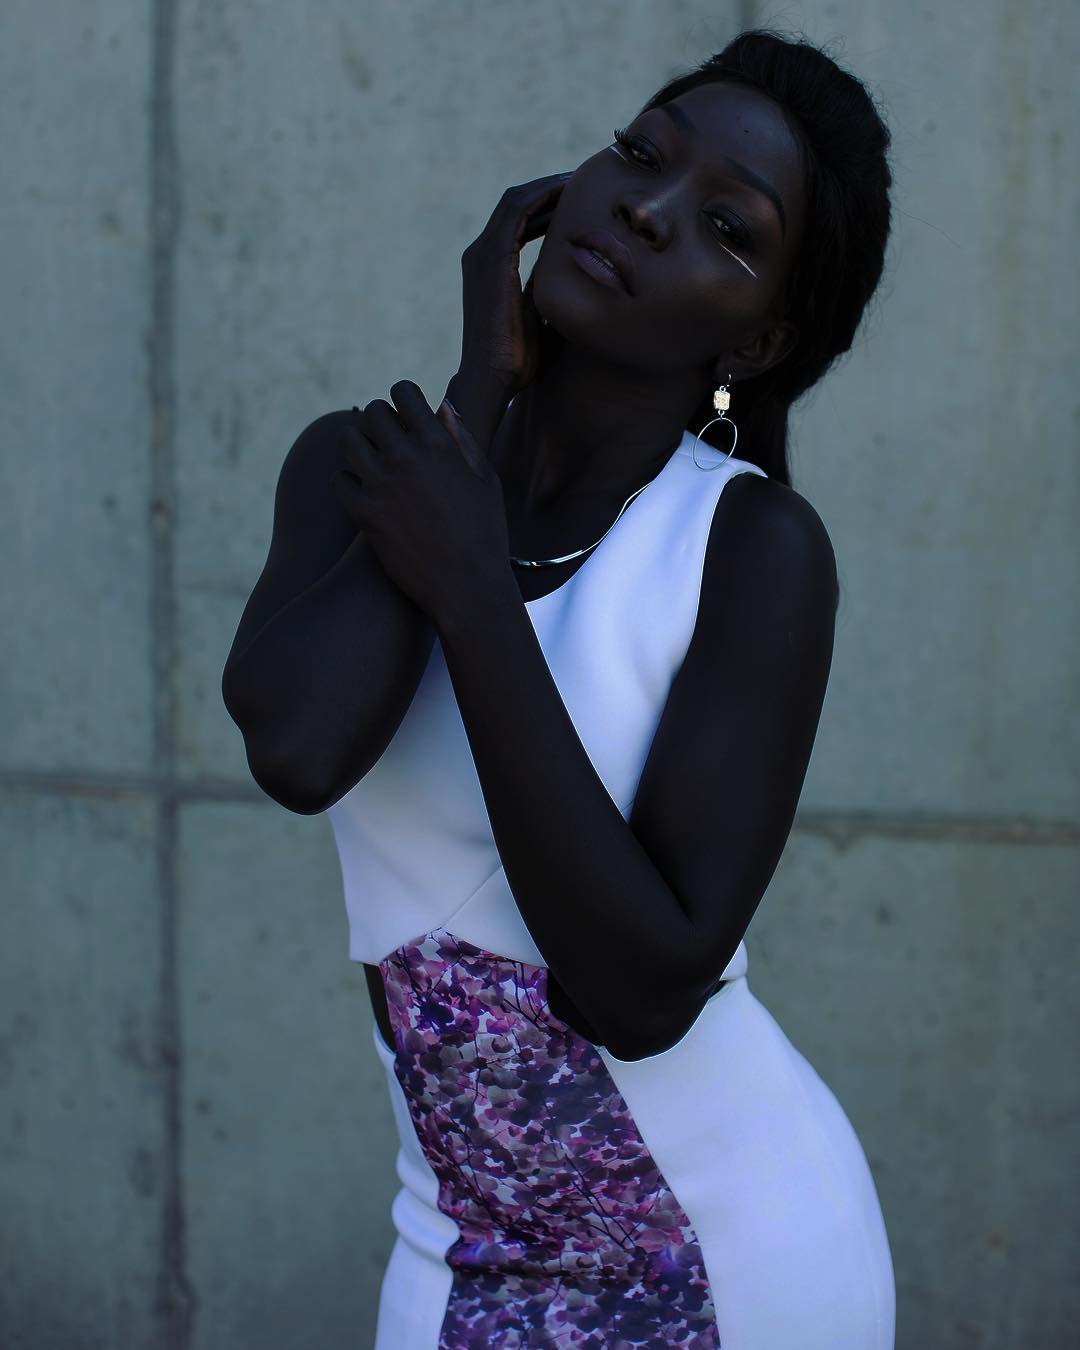 Темная негритянка. Няким Гатвеч. Нуаким Гатвеч модель. Нуаким Гатвеч модель из Южного Судана. Суданская модель Ньяким.